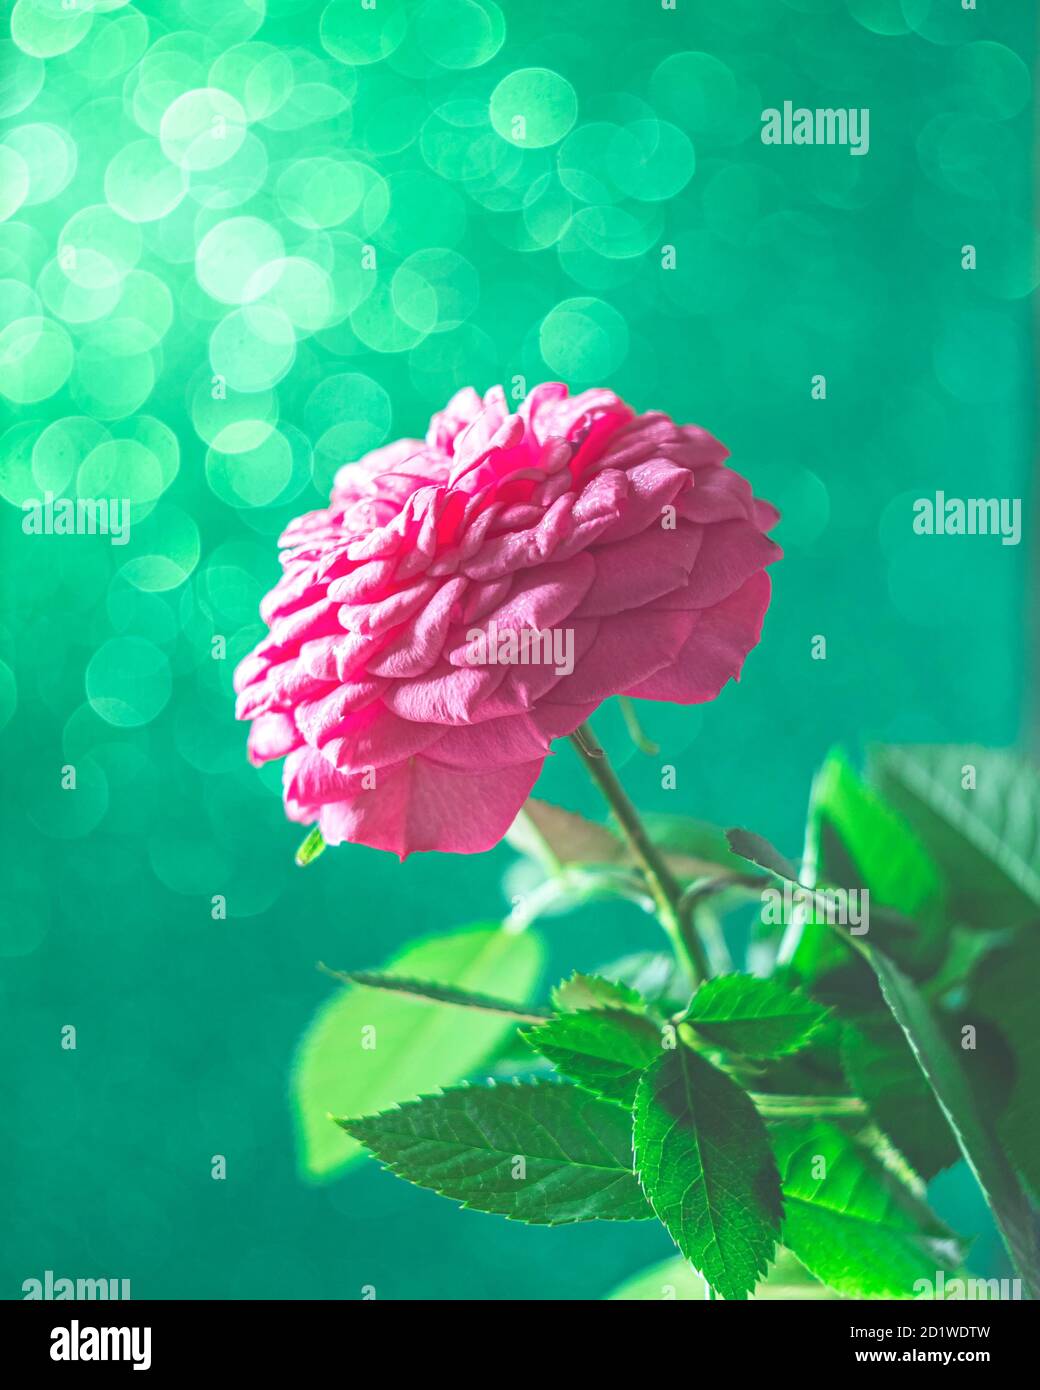 Summer blossoming rose, rosehip, bokeh flower background. Stock Photo